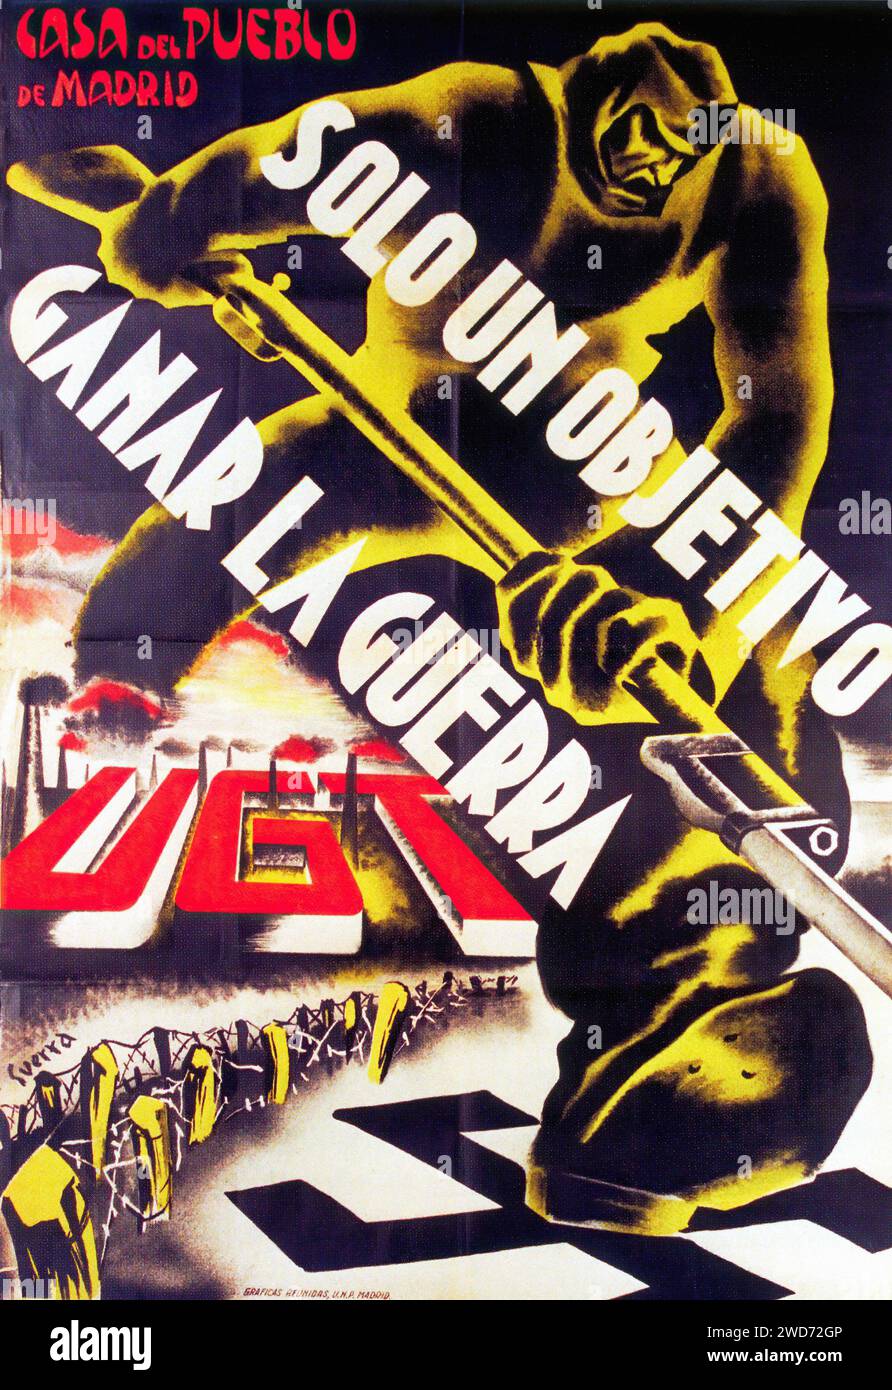 « Just One Goal - Win the war (UGT) 1937 » cette affiche UGT de la guerre civile espagnole met un accent singulier : la victoire dans la guerre. Il utilise l'image d'un travailleur déterminé pour symboliser l'effort unifié et la résolution militante requis. Mots-clés : - Spanish civil War (Guerra civil Española) Propaganda Poster Banque D'Images